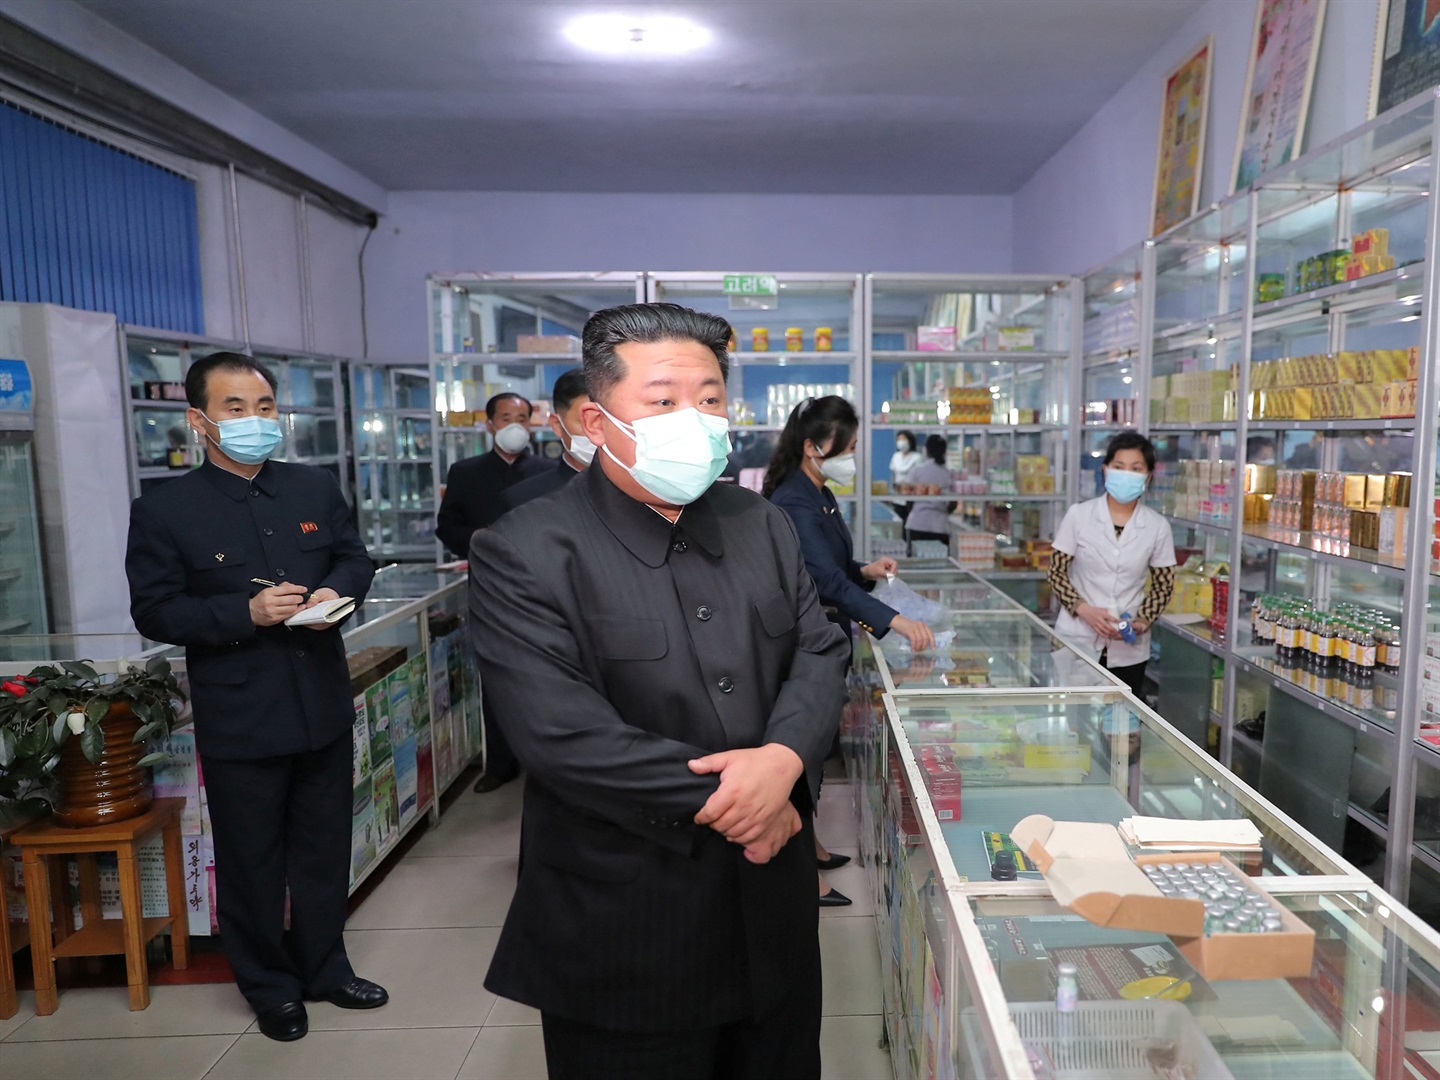 Korea Utara meminta warganya untuk berkumur dengan air garam dan minum teh daun willow untuk melawan Covid